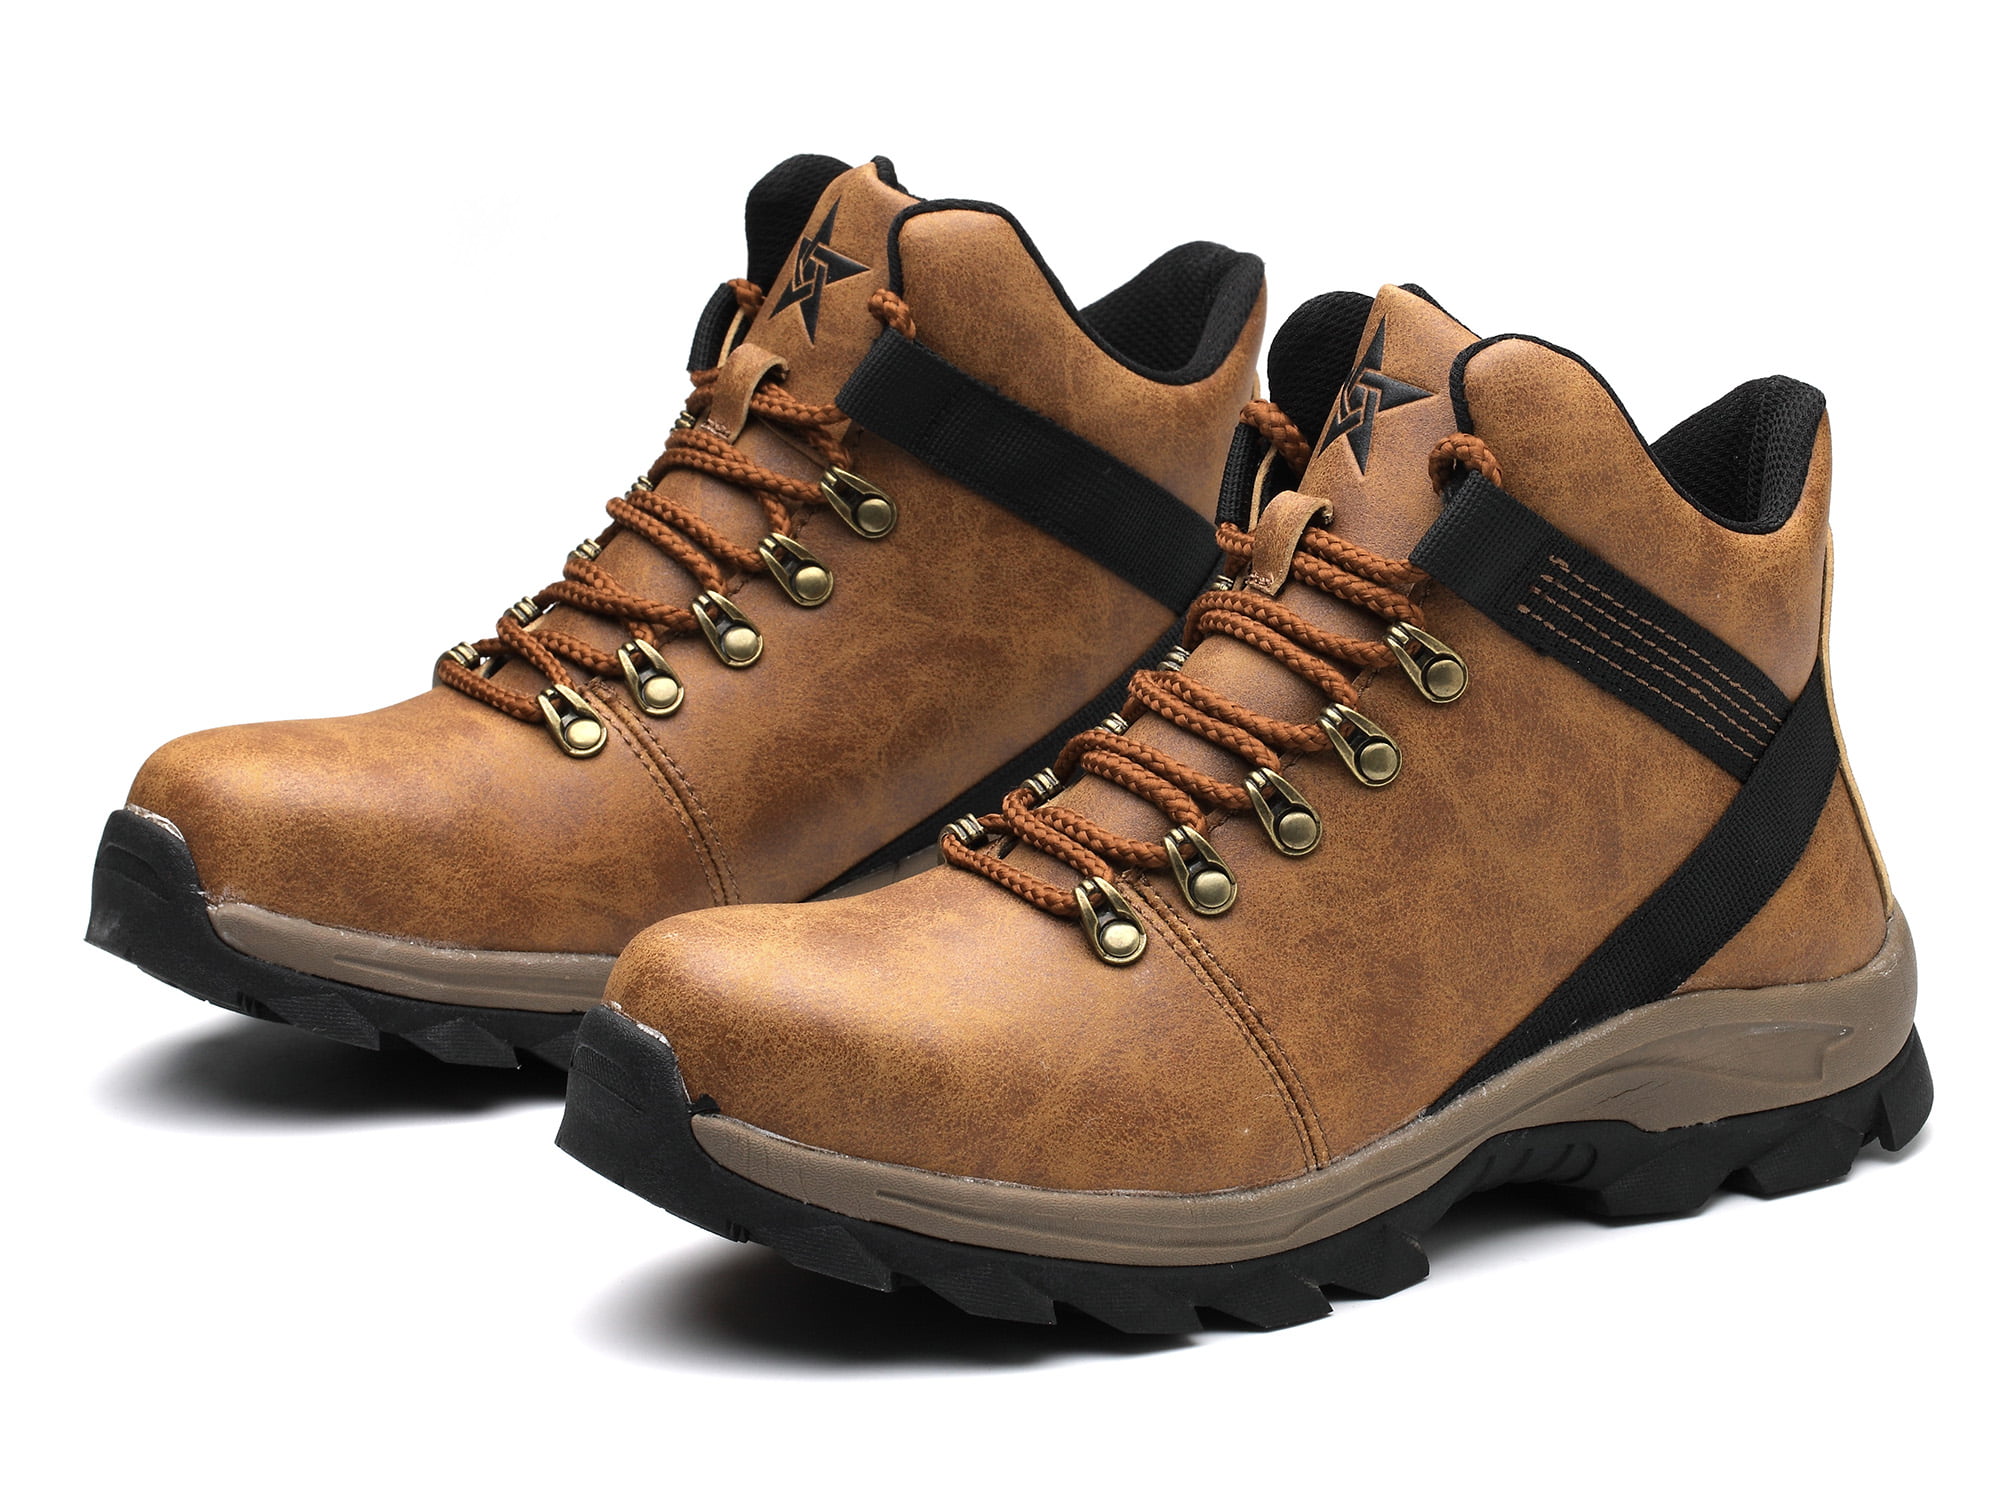 Men's Safety Steel Toe Work Boots Indestructible Bulletproof Outdoor Lightweight 